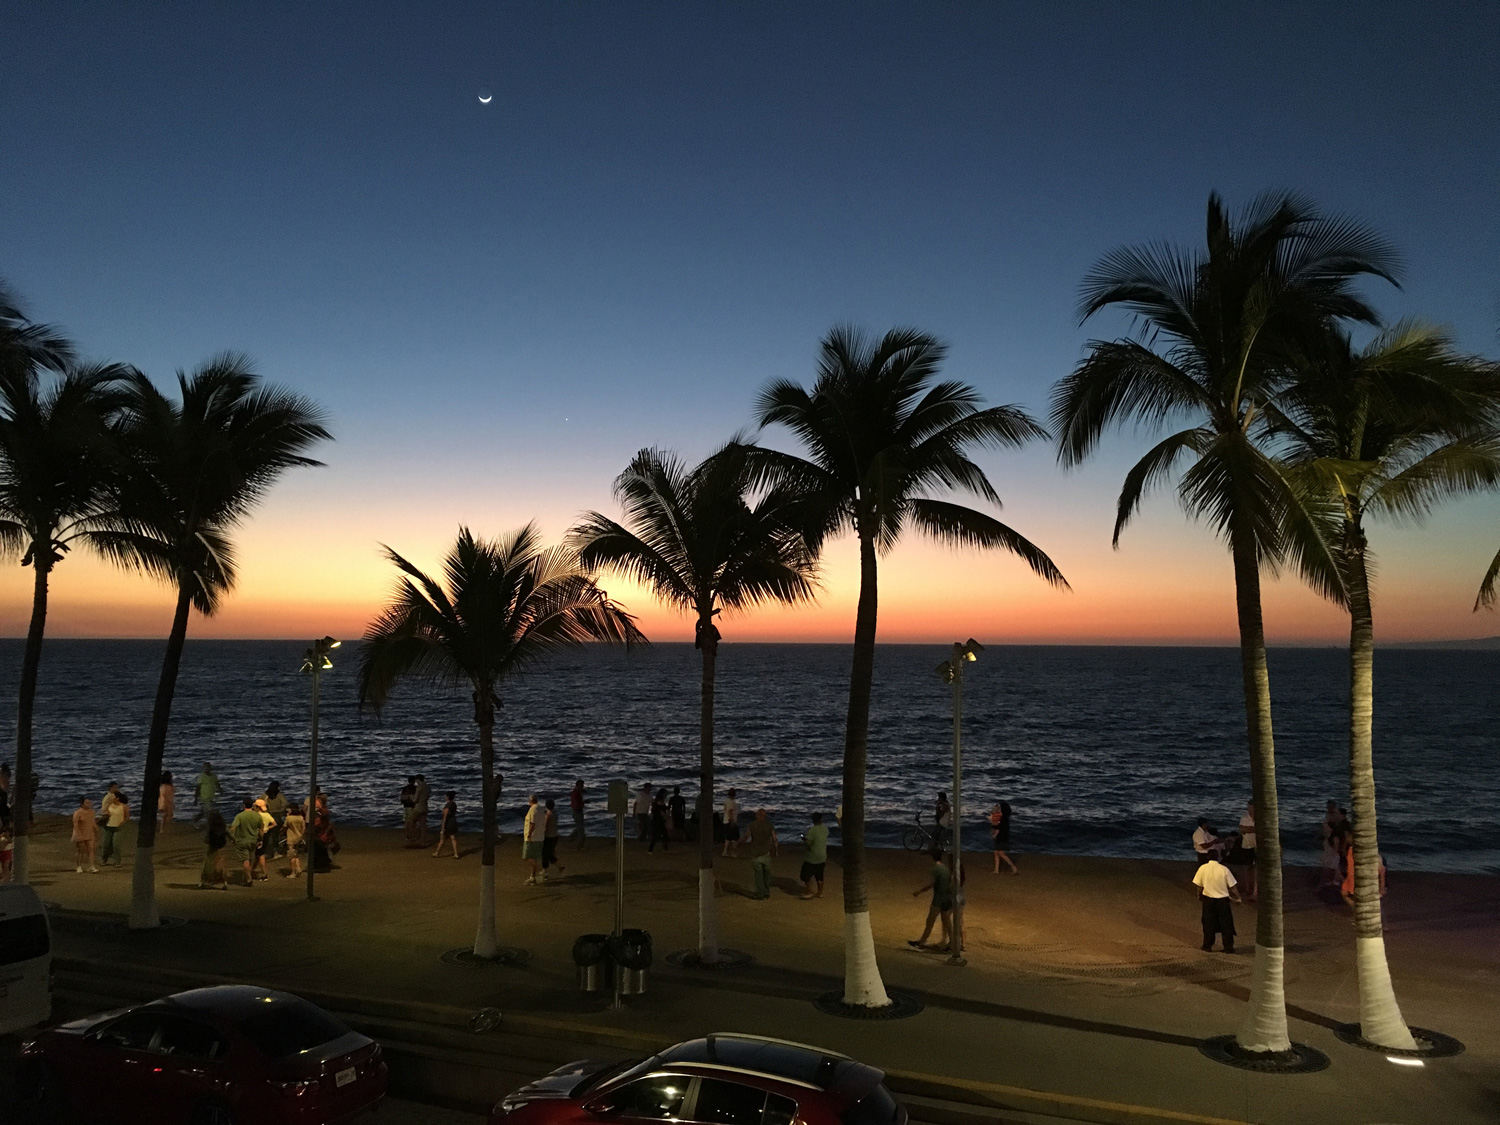 Sunset over Puerto Vallarta